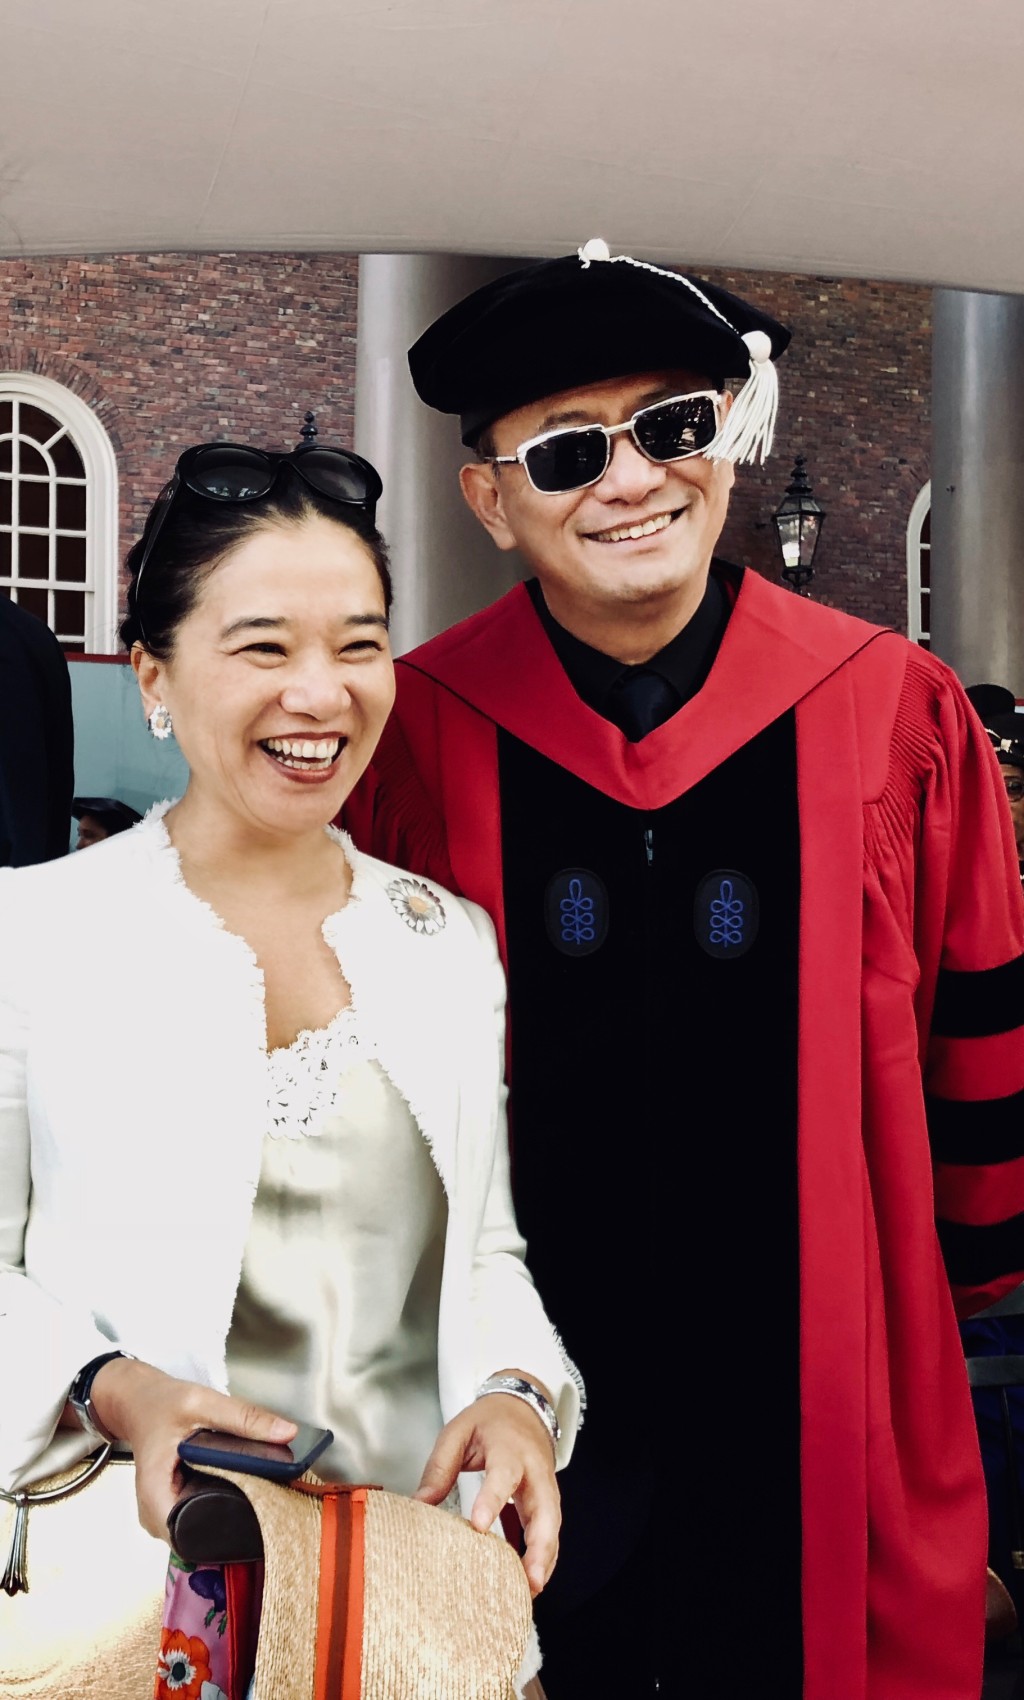 王家衛2018年獲美國哈佛大學授予文學榮譽博士學位，成為史上第一位獲此殊榮的亞洲導演。